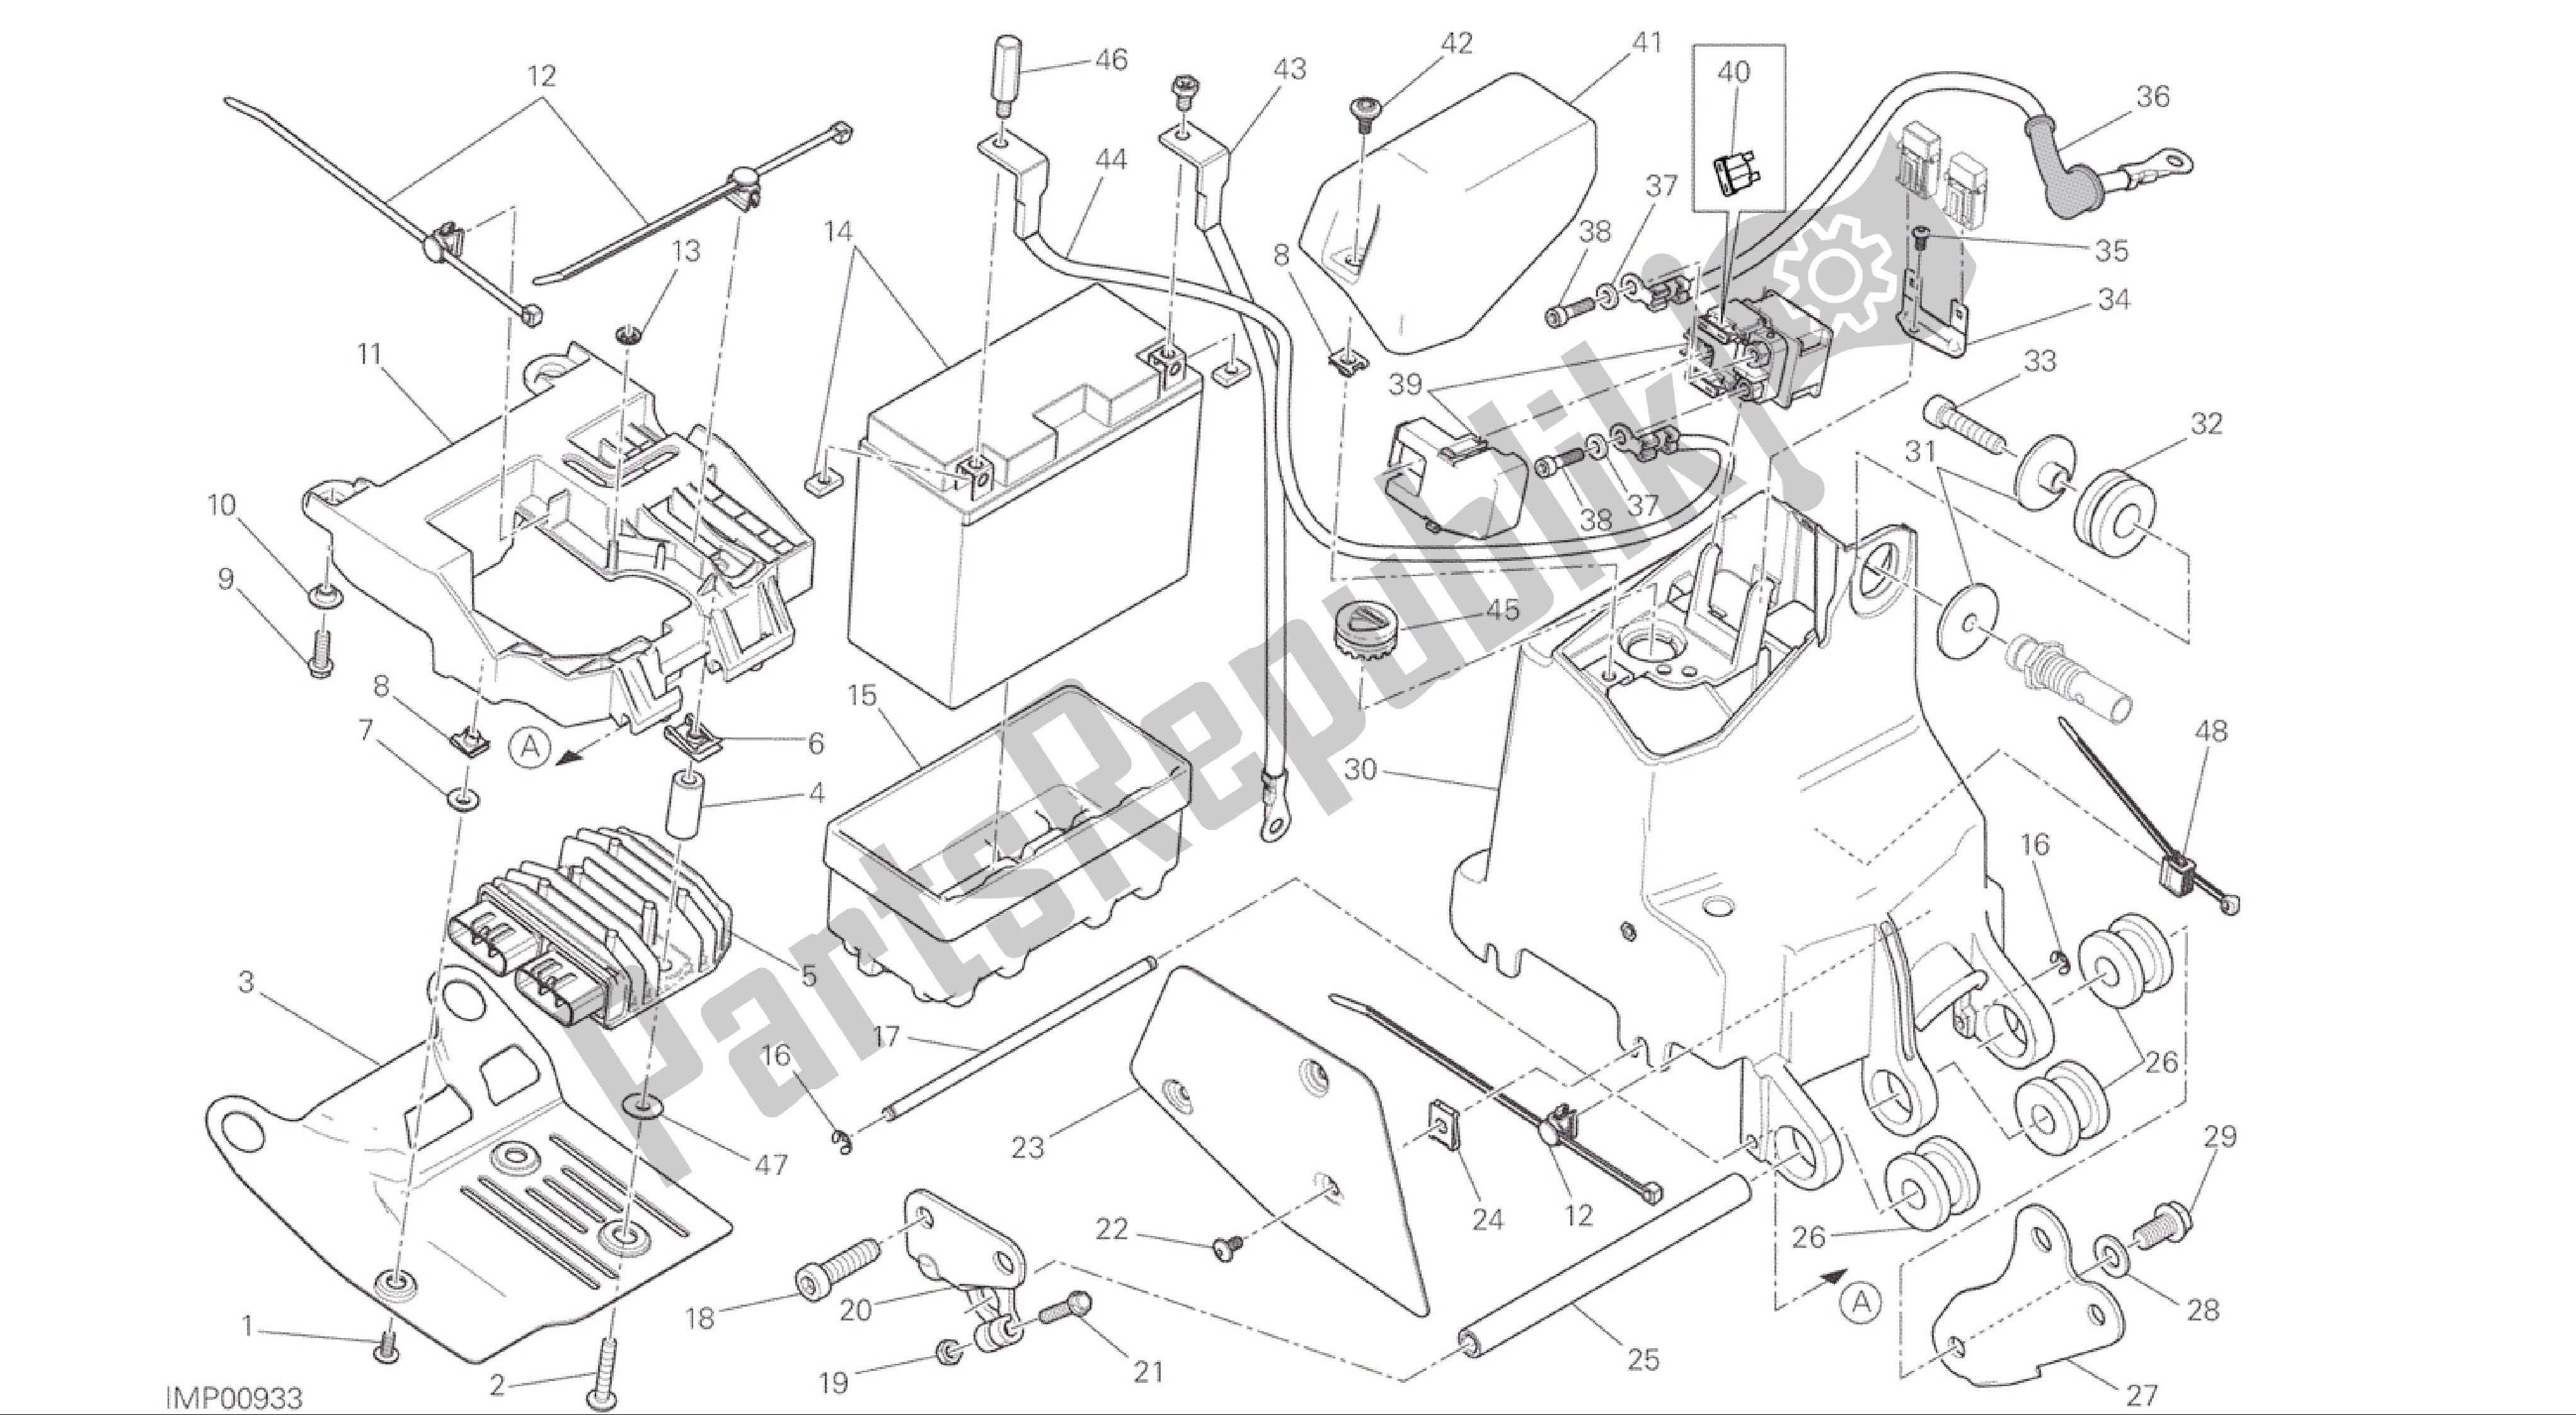 Tutte le parti per il Disegno 018 - Portabatterie [mod: M 1200] Gruppo Elettrico del Ducati Monster 1200 2015